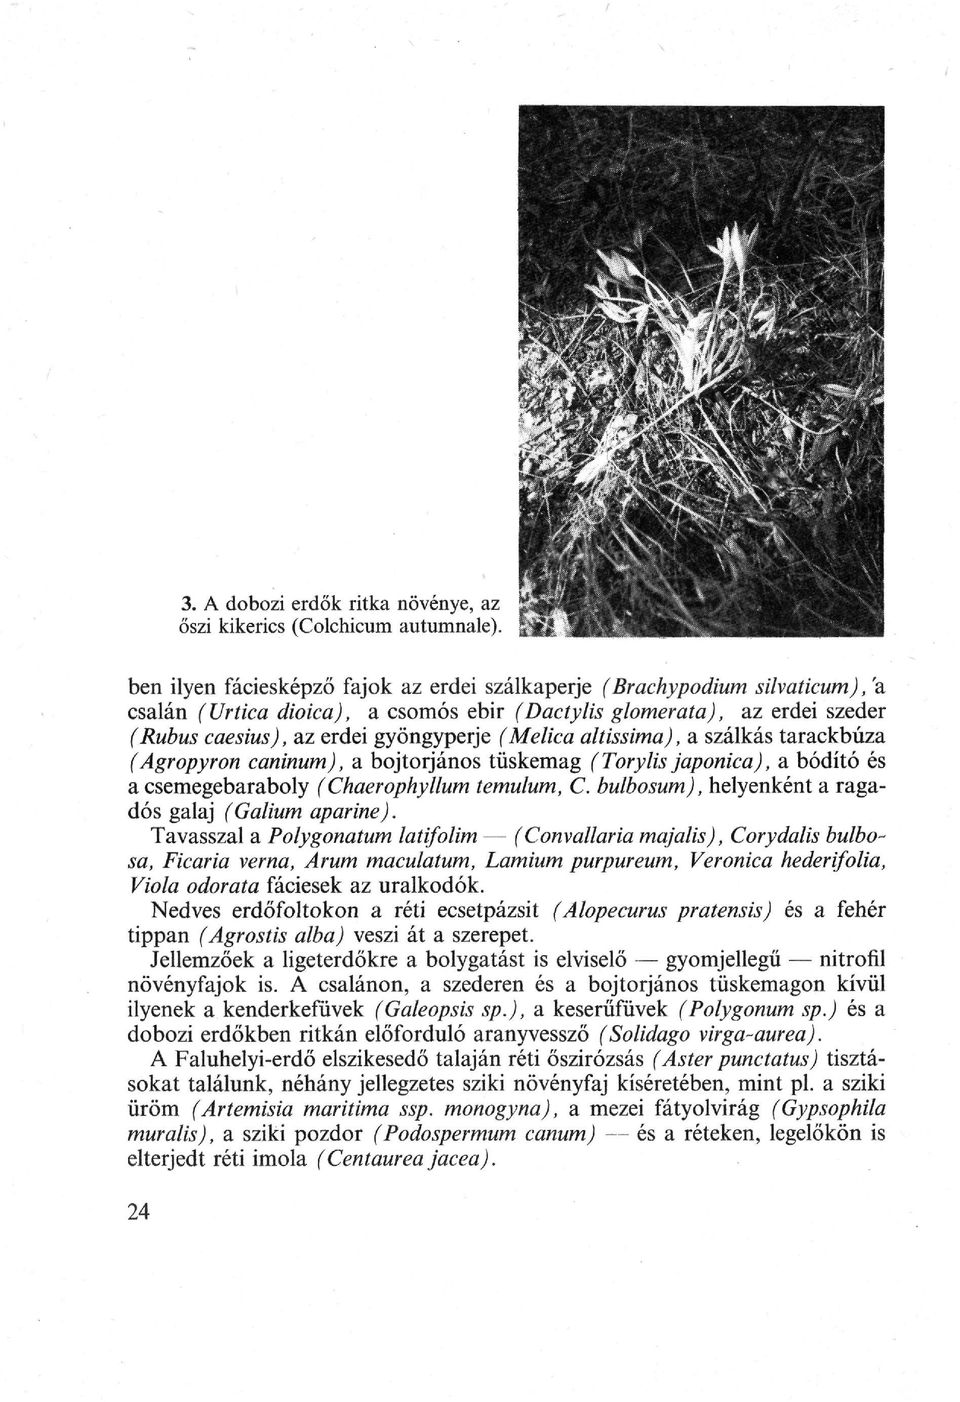 altissima), a szálkás tarackbúza (Agropyron caninum), a bojtorjános tüskemag (Torylis japonica), a bódító és a csemegebaraboly (Chaerophyllum temulum, C.